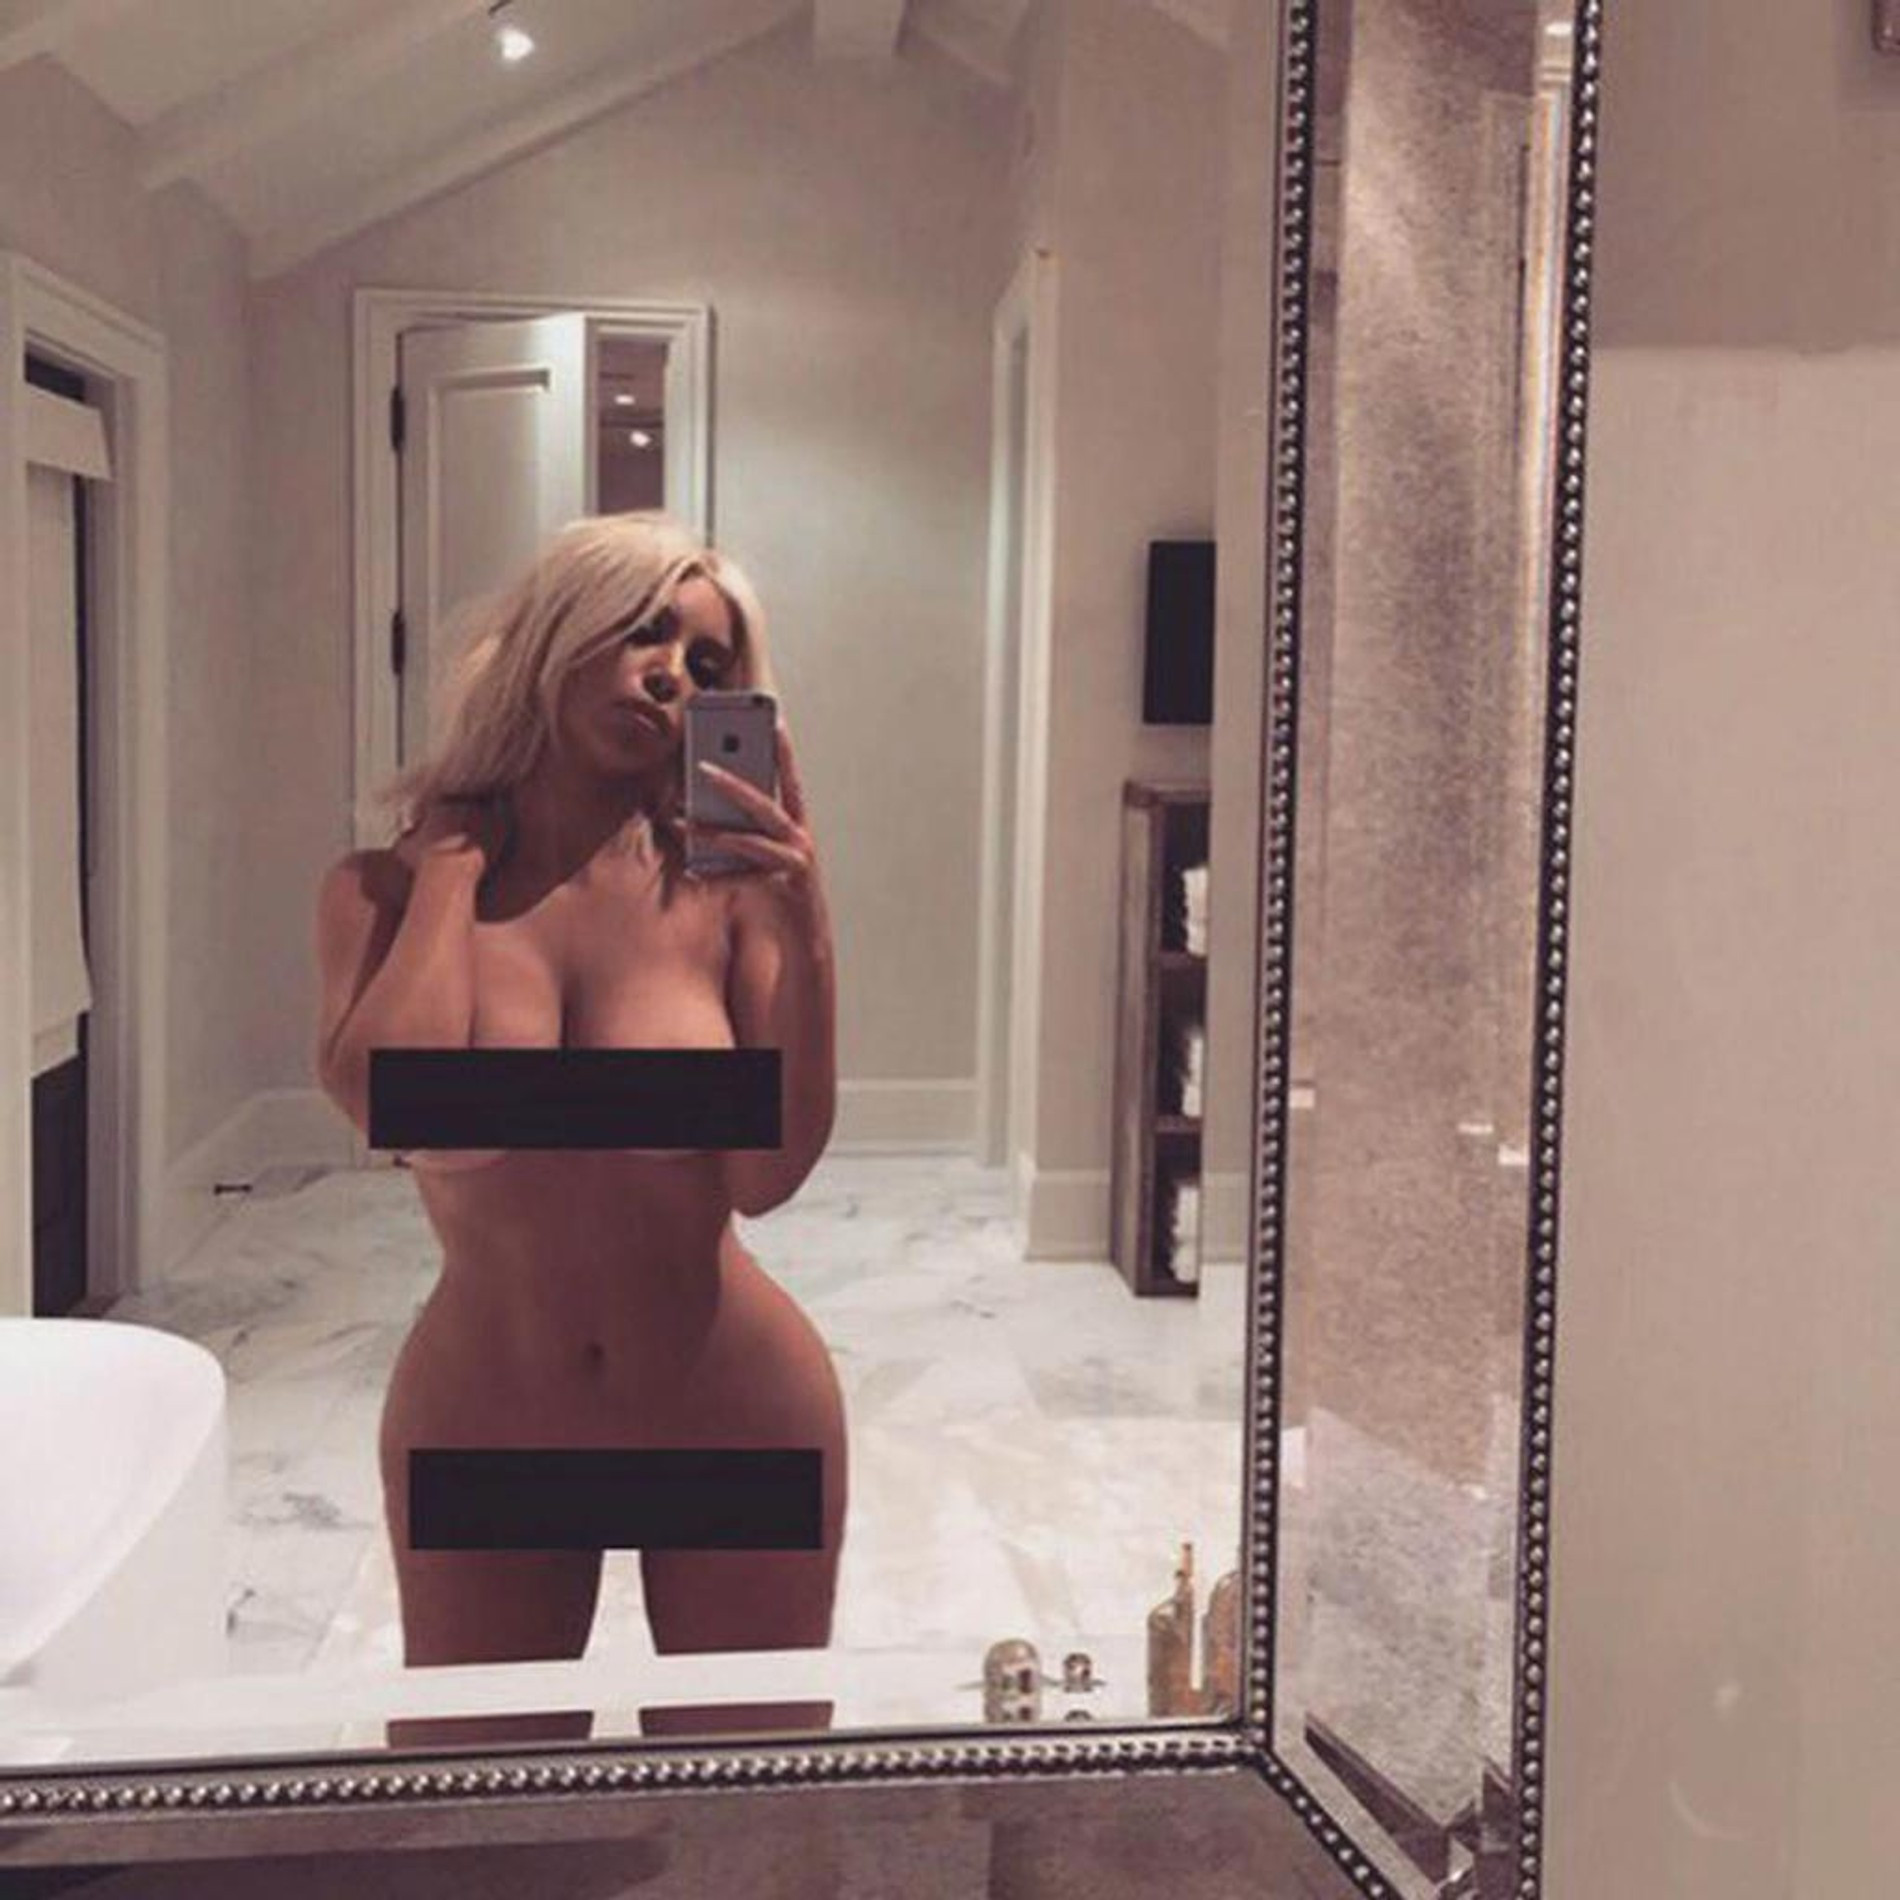 Ким Кардашьян не стесняется хвастаться своим телом в социальных сетях
Фото: Инстаграм (запрещен в РФ) Ким Кардашьян